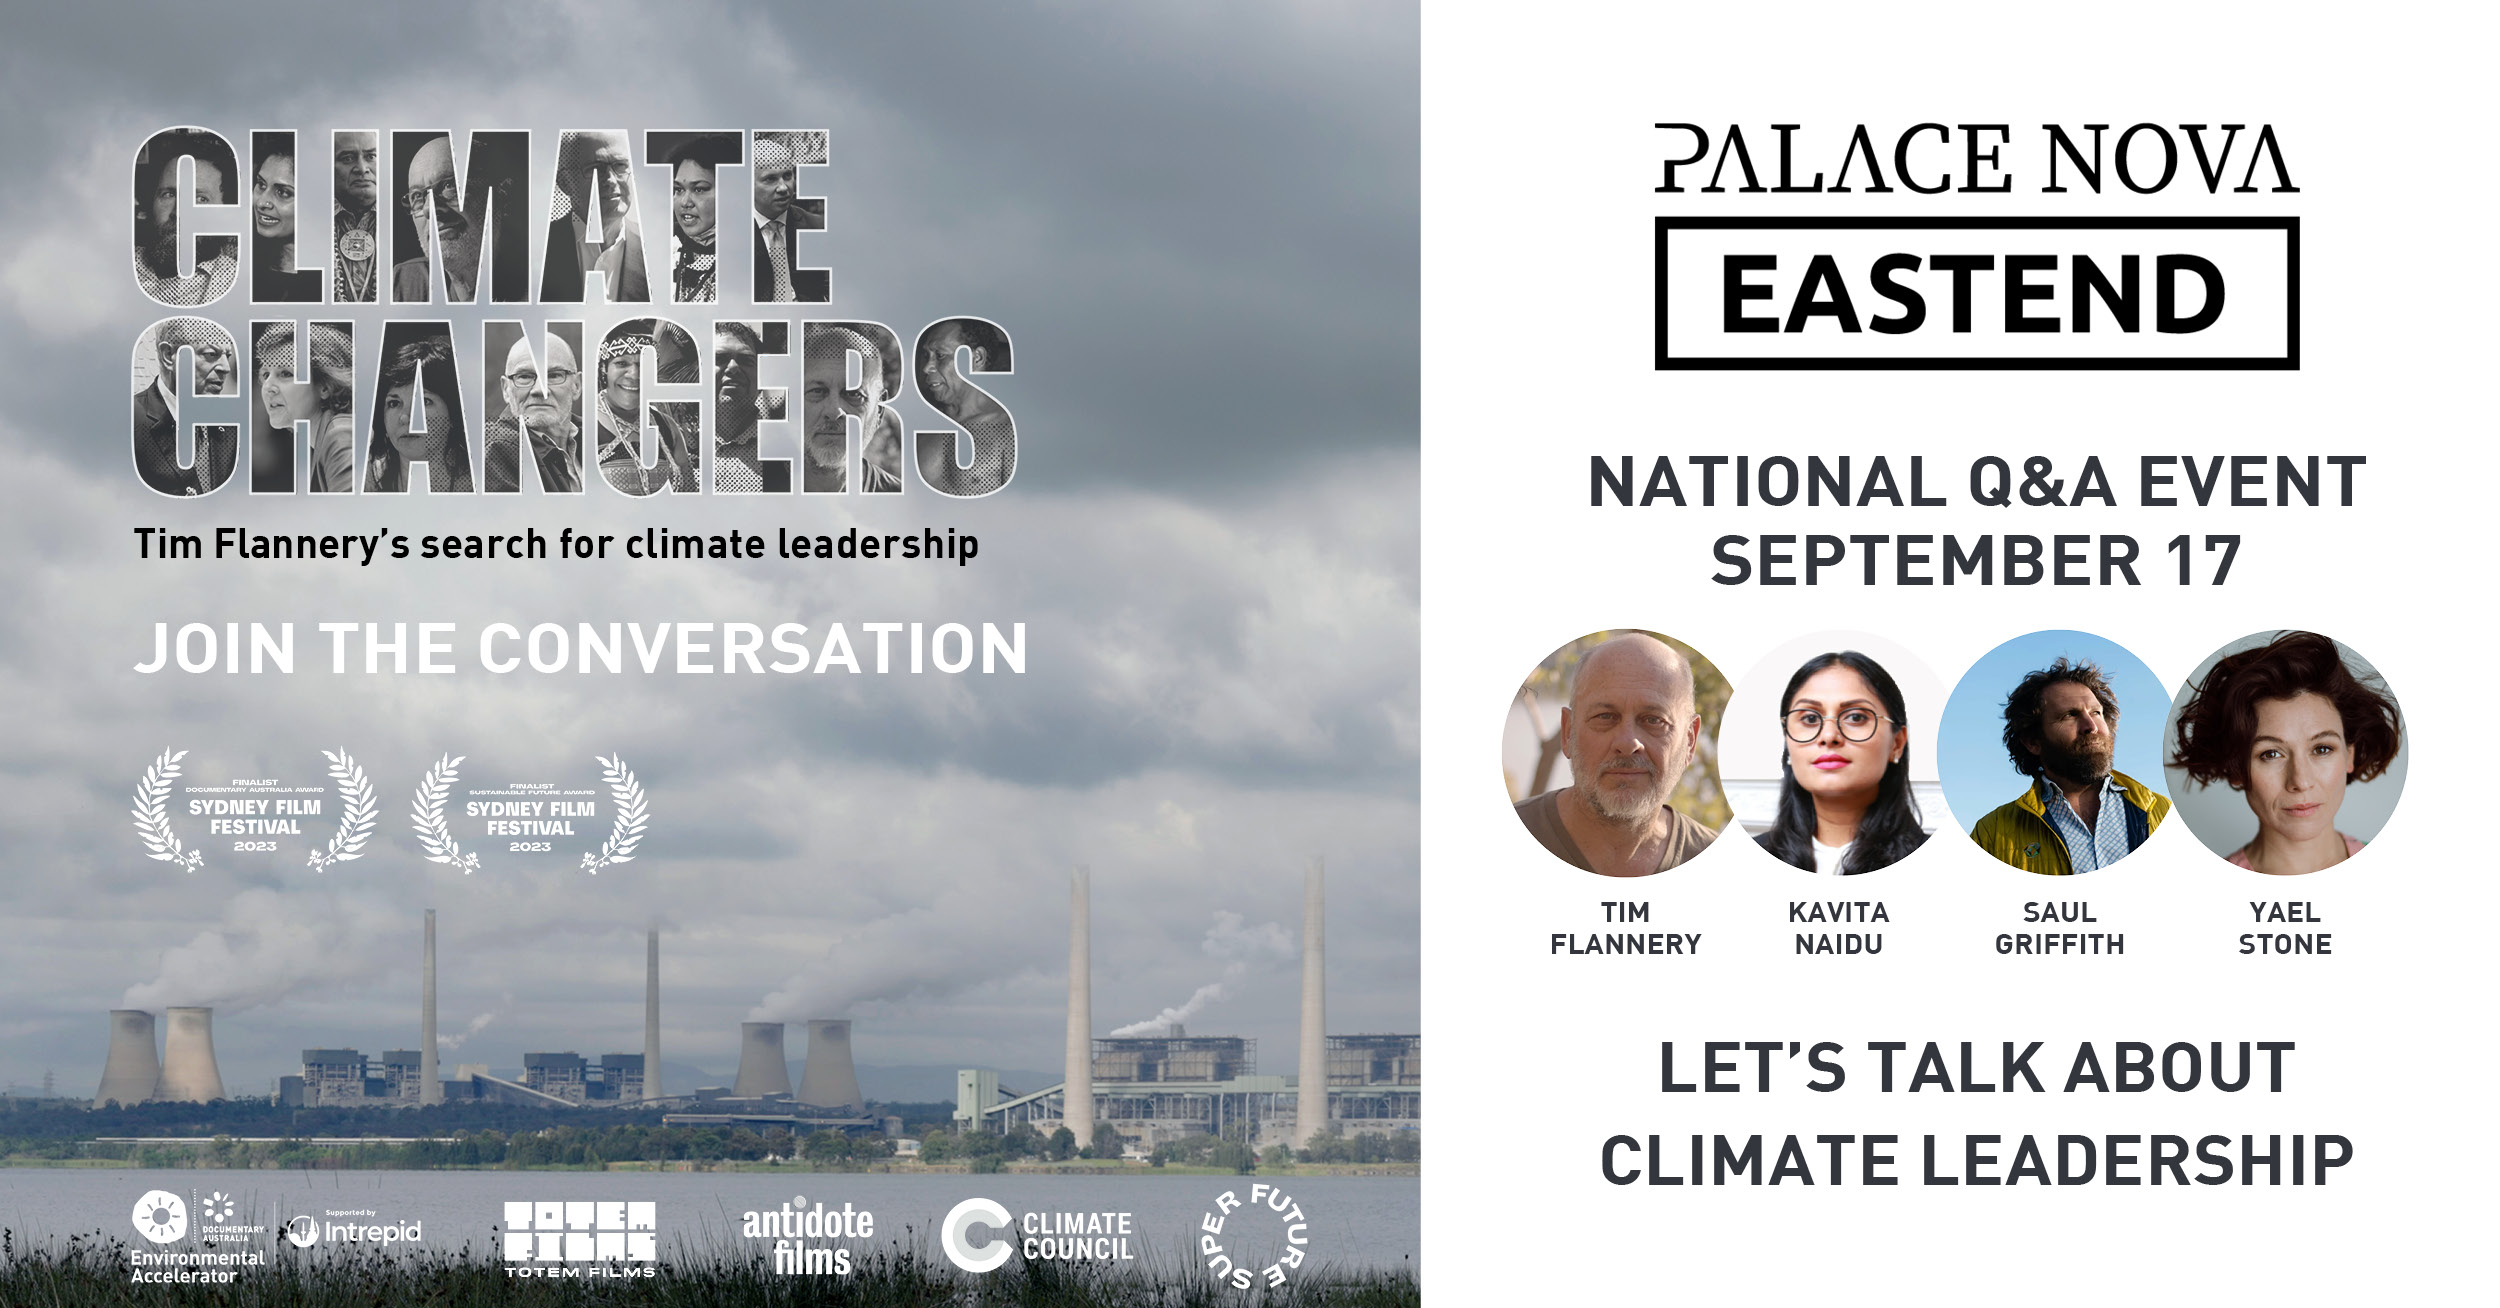 climate-changers-palace-nova-eastend